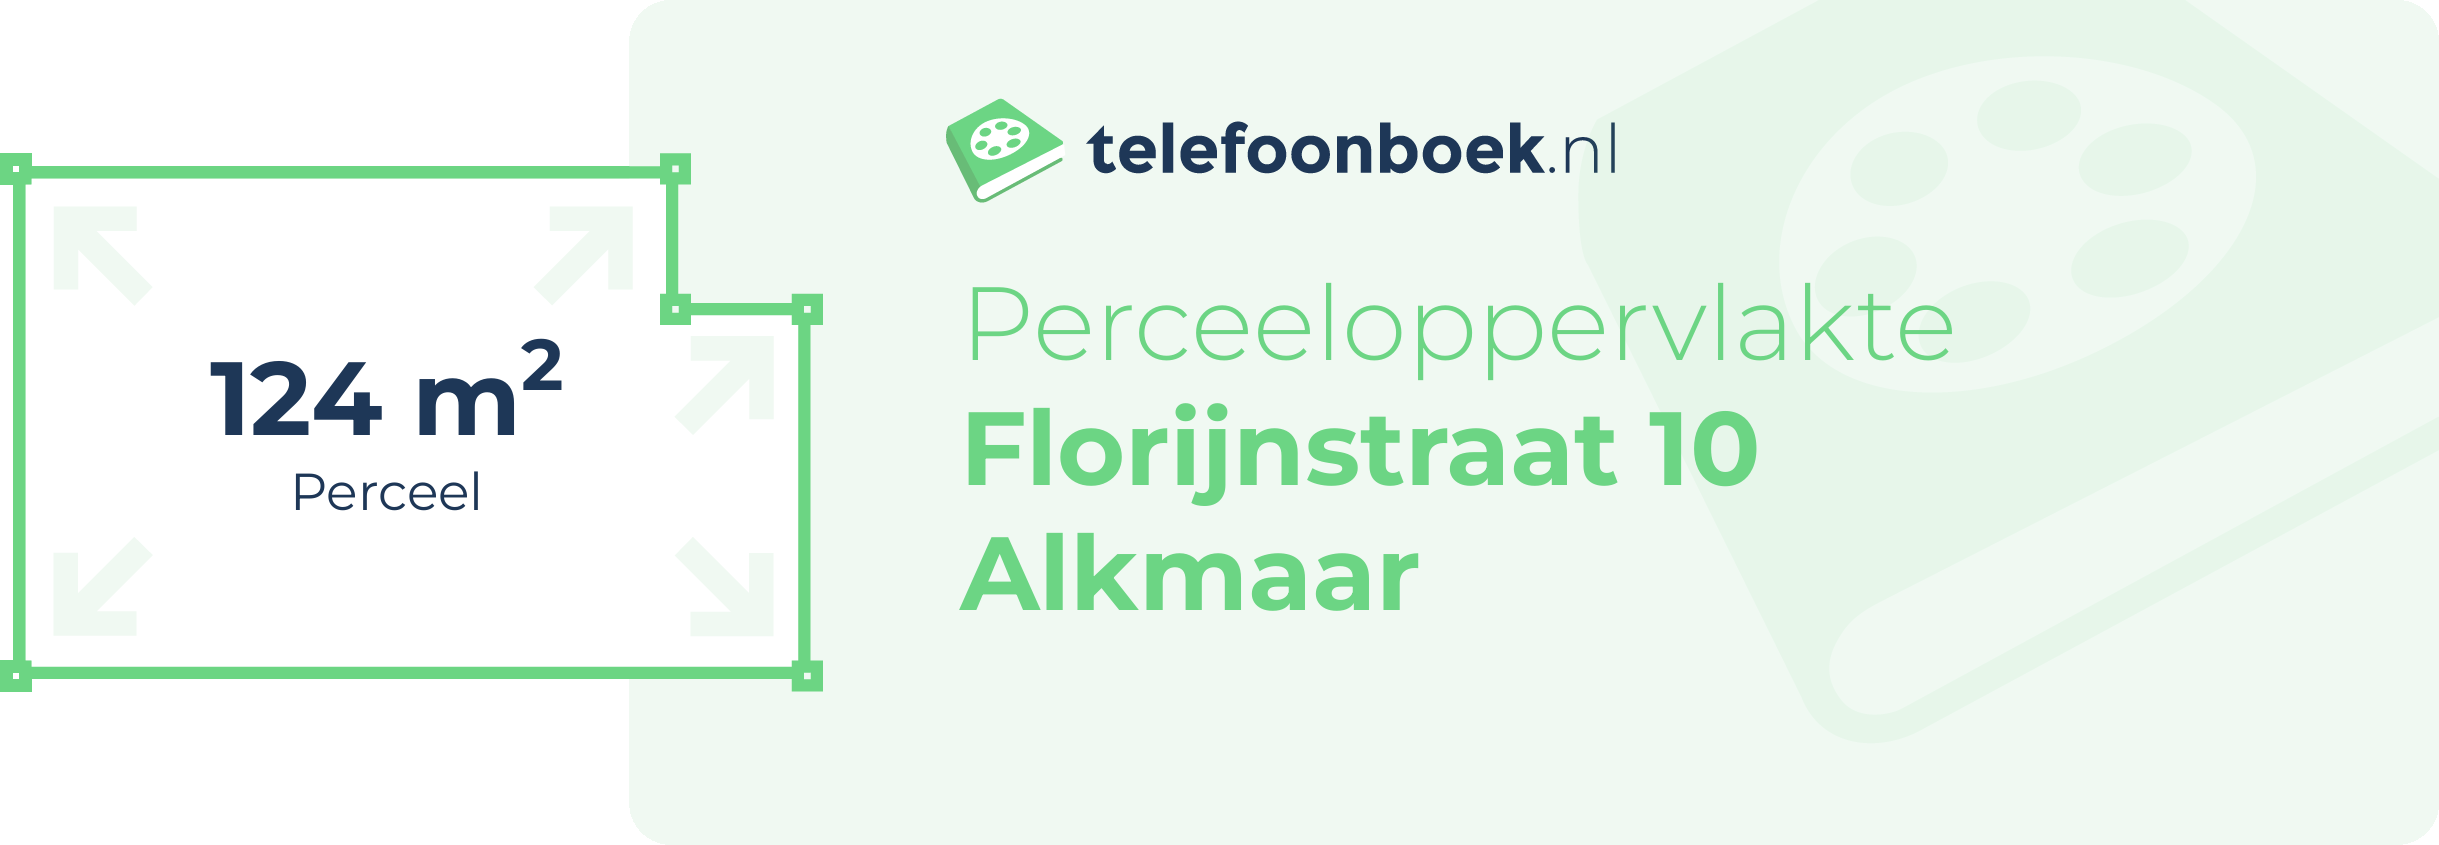 Perceeloppervlakte Florijnstraat 10 Alkmaar